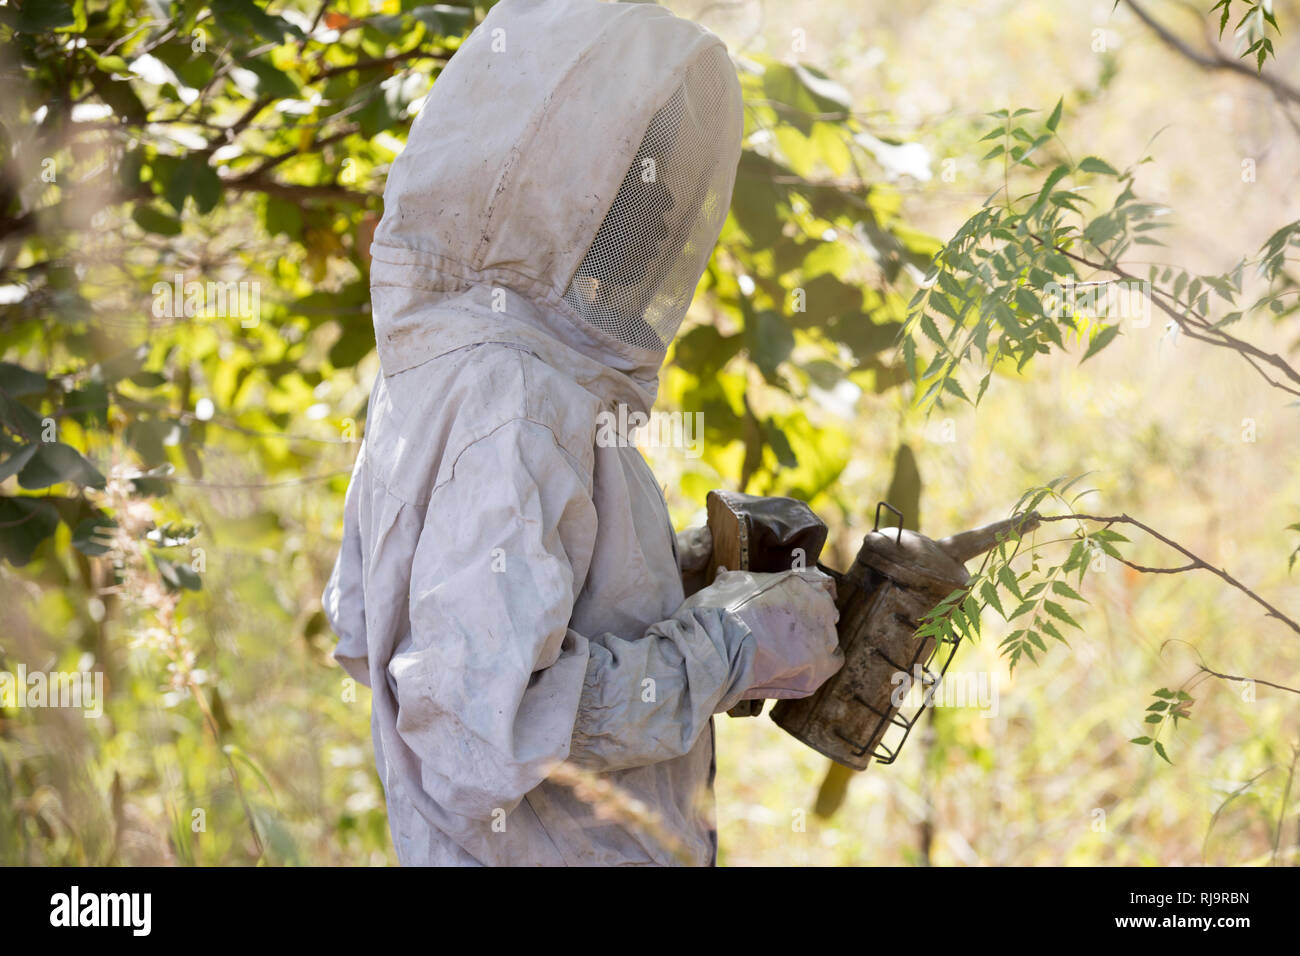 Village de Bissiga, Yako, Burkina Faso, le 29 novembre 2016 ; membre de la Women's Forest Livlihood projet, se prépare à collecter le miel provenant d'un des 10 ruches. Banque D'Images